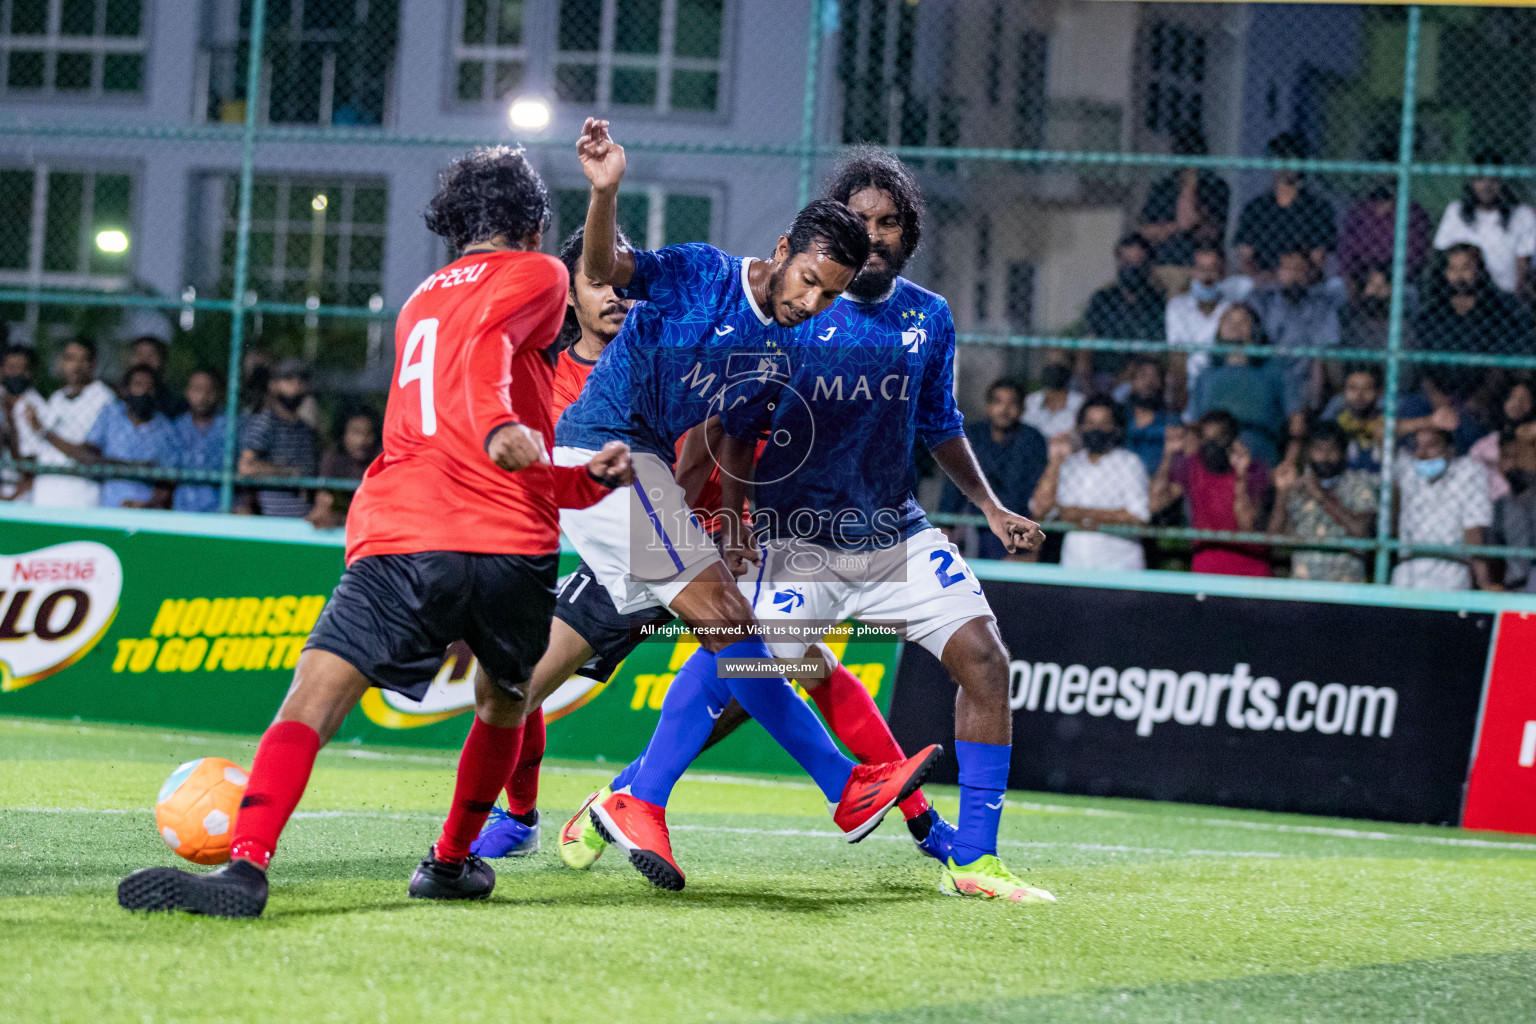 Club Maldives Day 2